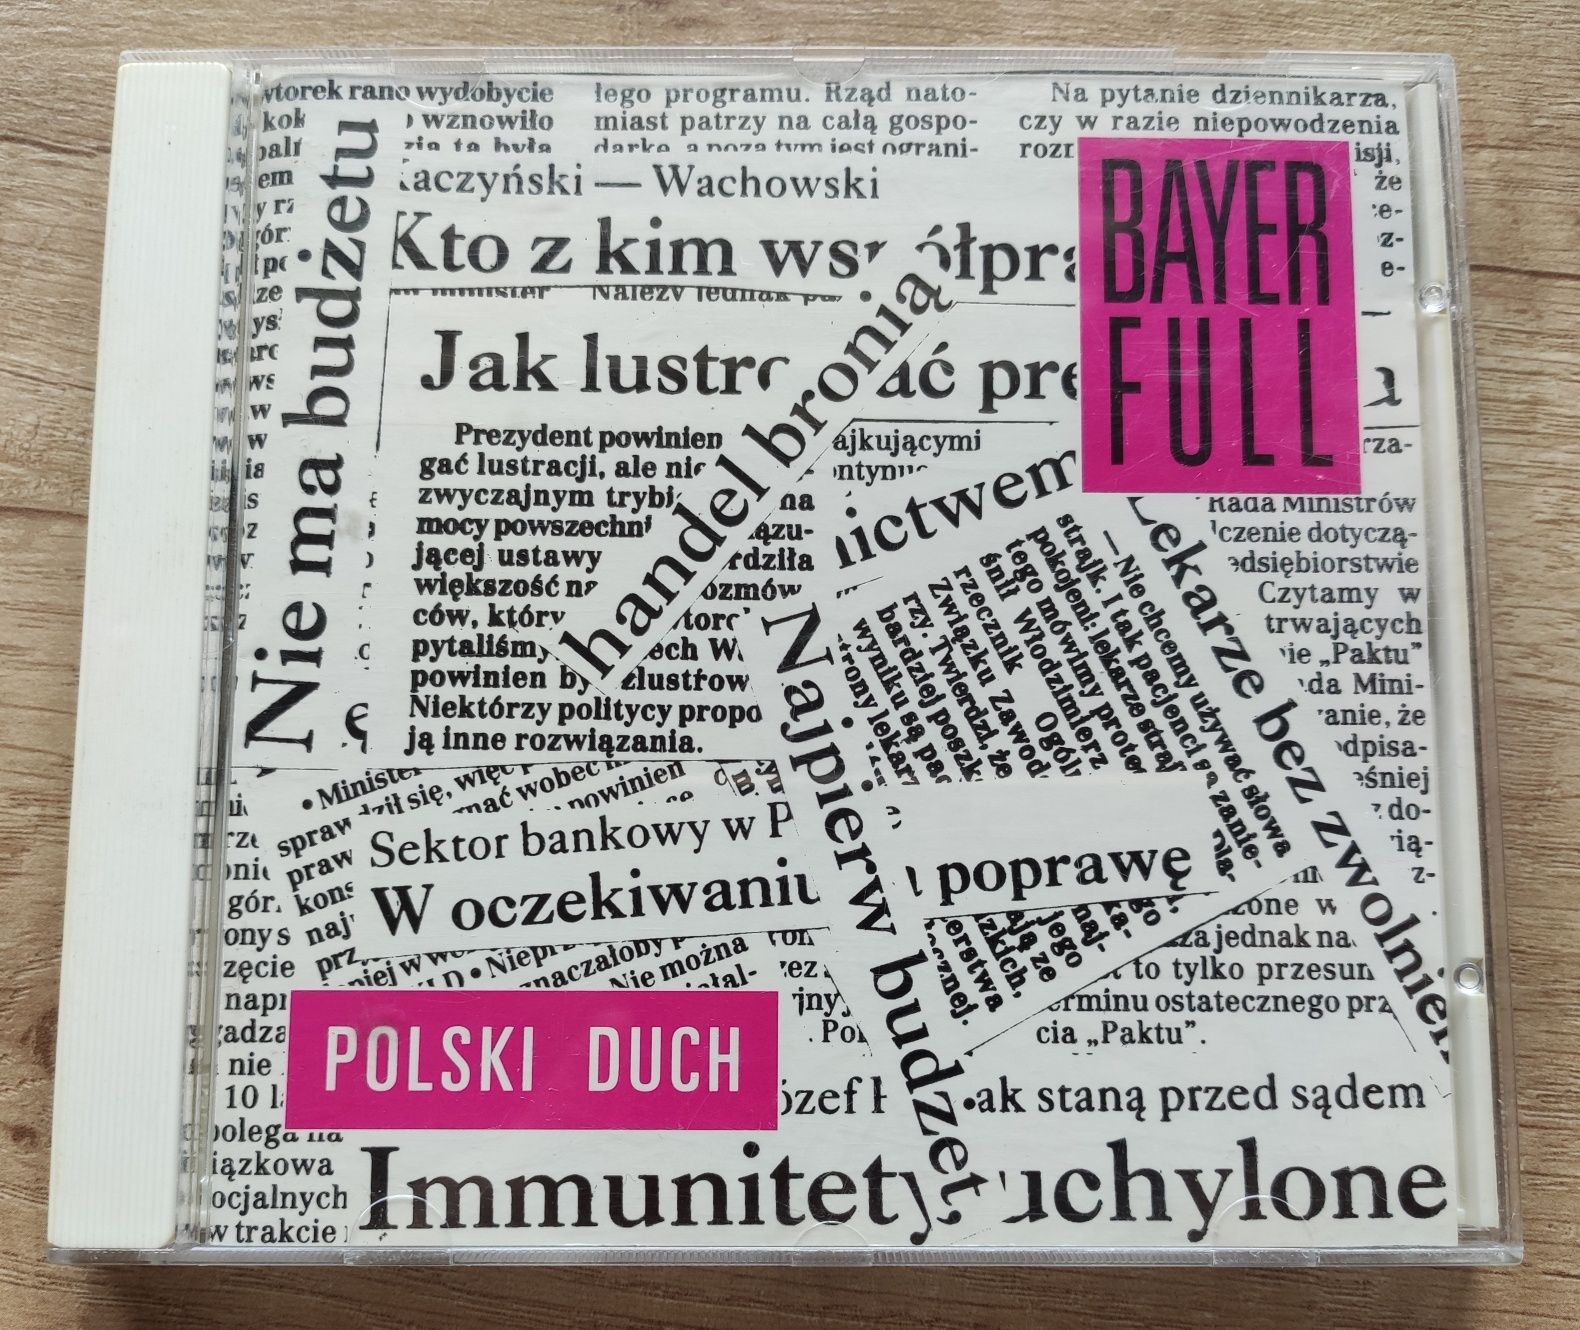 BAYER FULL Polski Duch płyta CD 1993 Ryszard Music USA disco polo